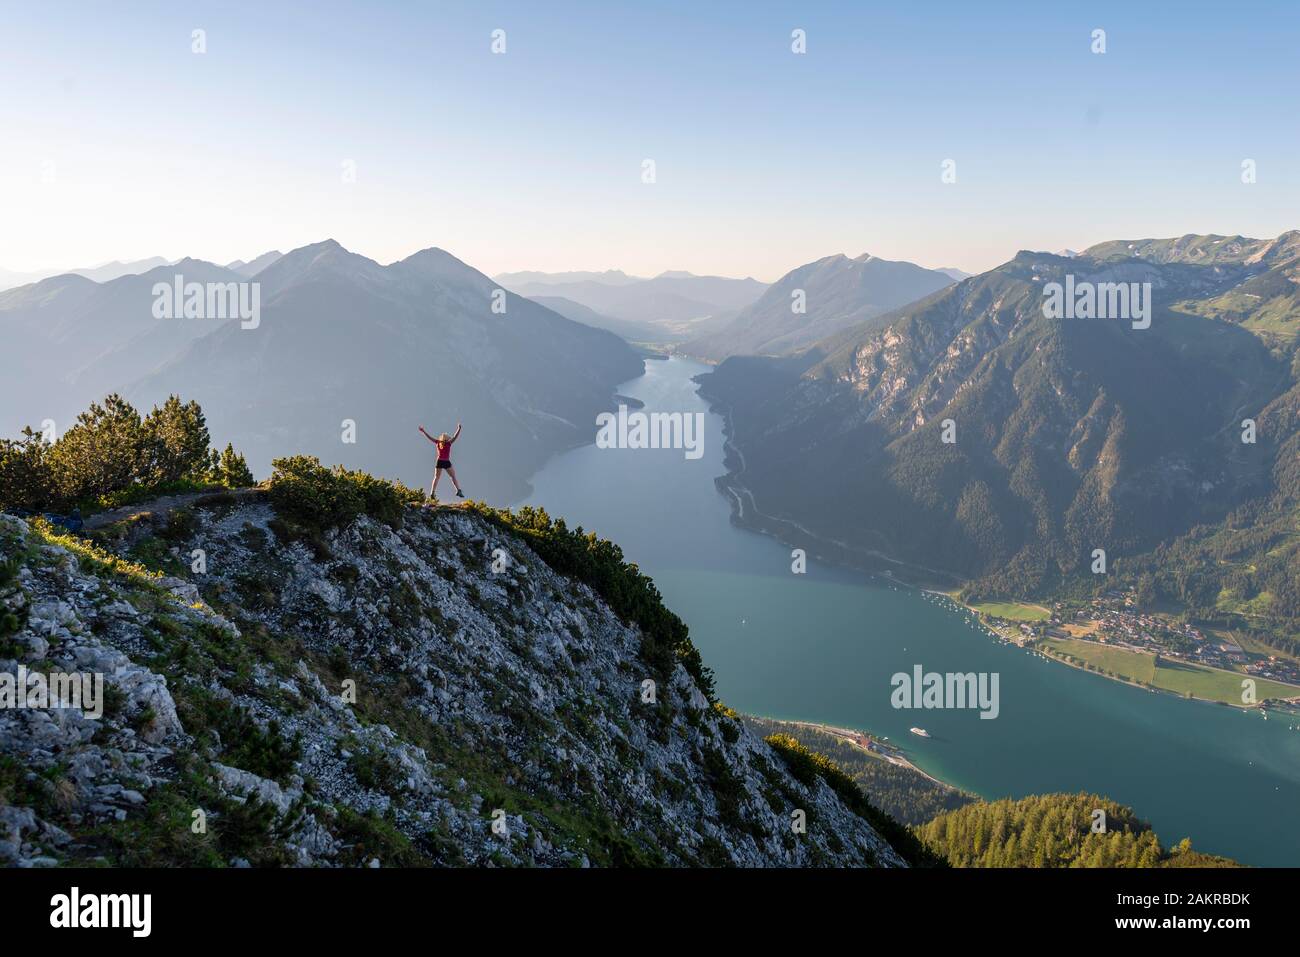 Junge Frau springt in die Luft, Aussicht vom Berg Baerenkopf zum Achensee, links Seebergspitze und Seekarspitze, rechts Rofangebirge Stockfoto